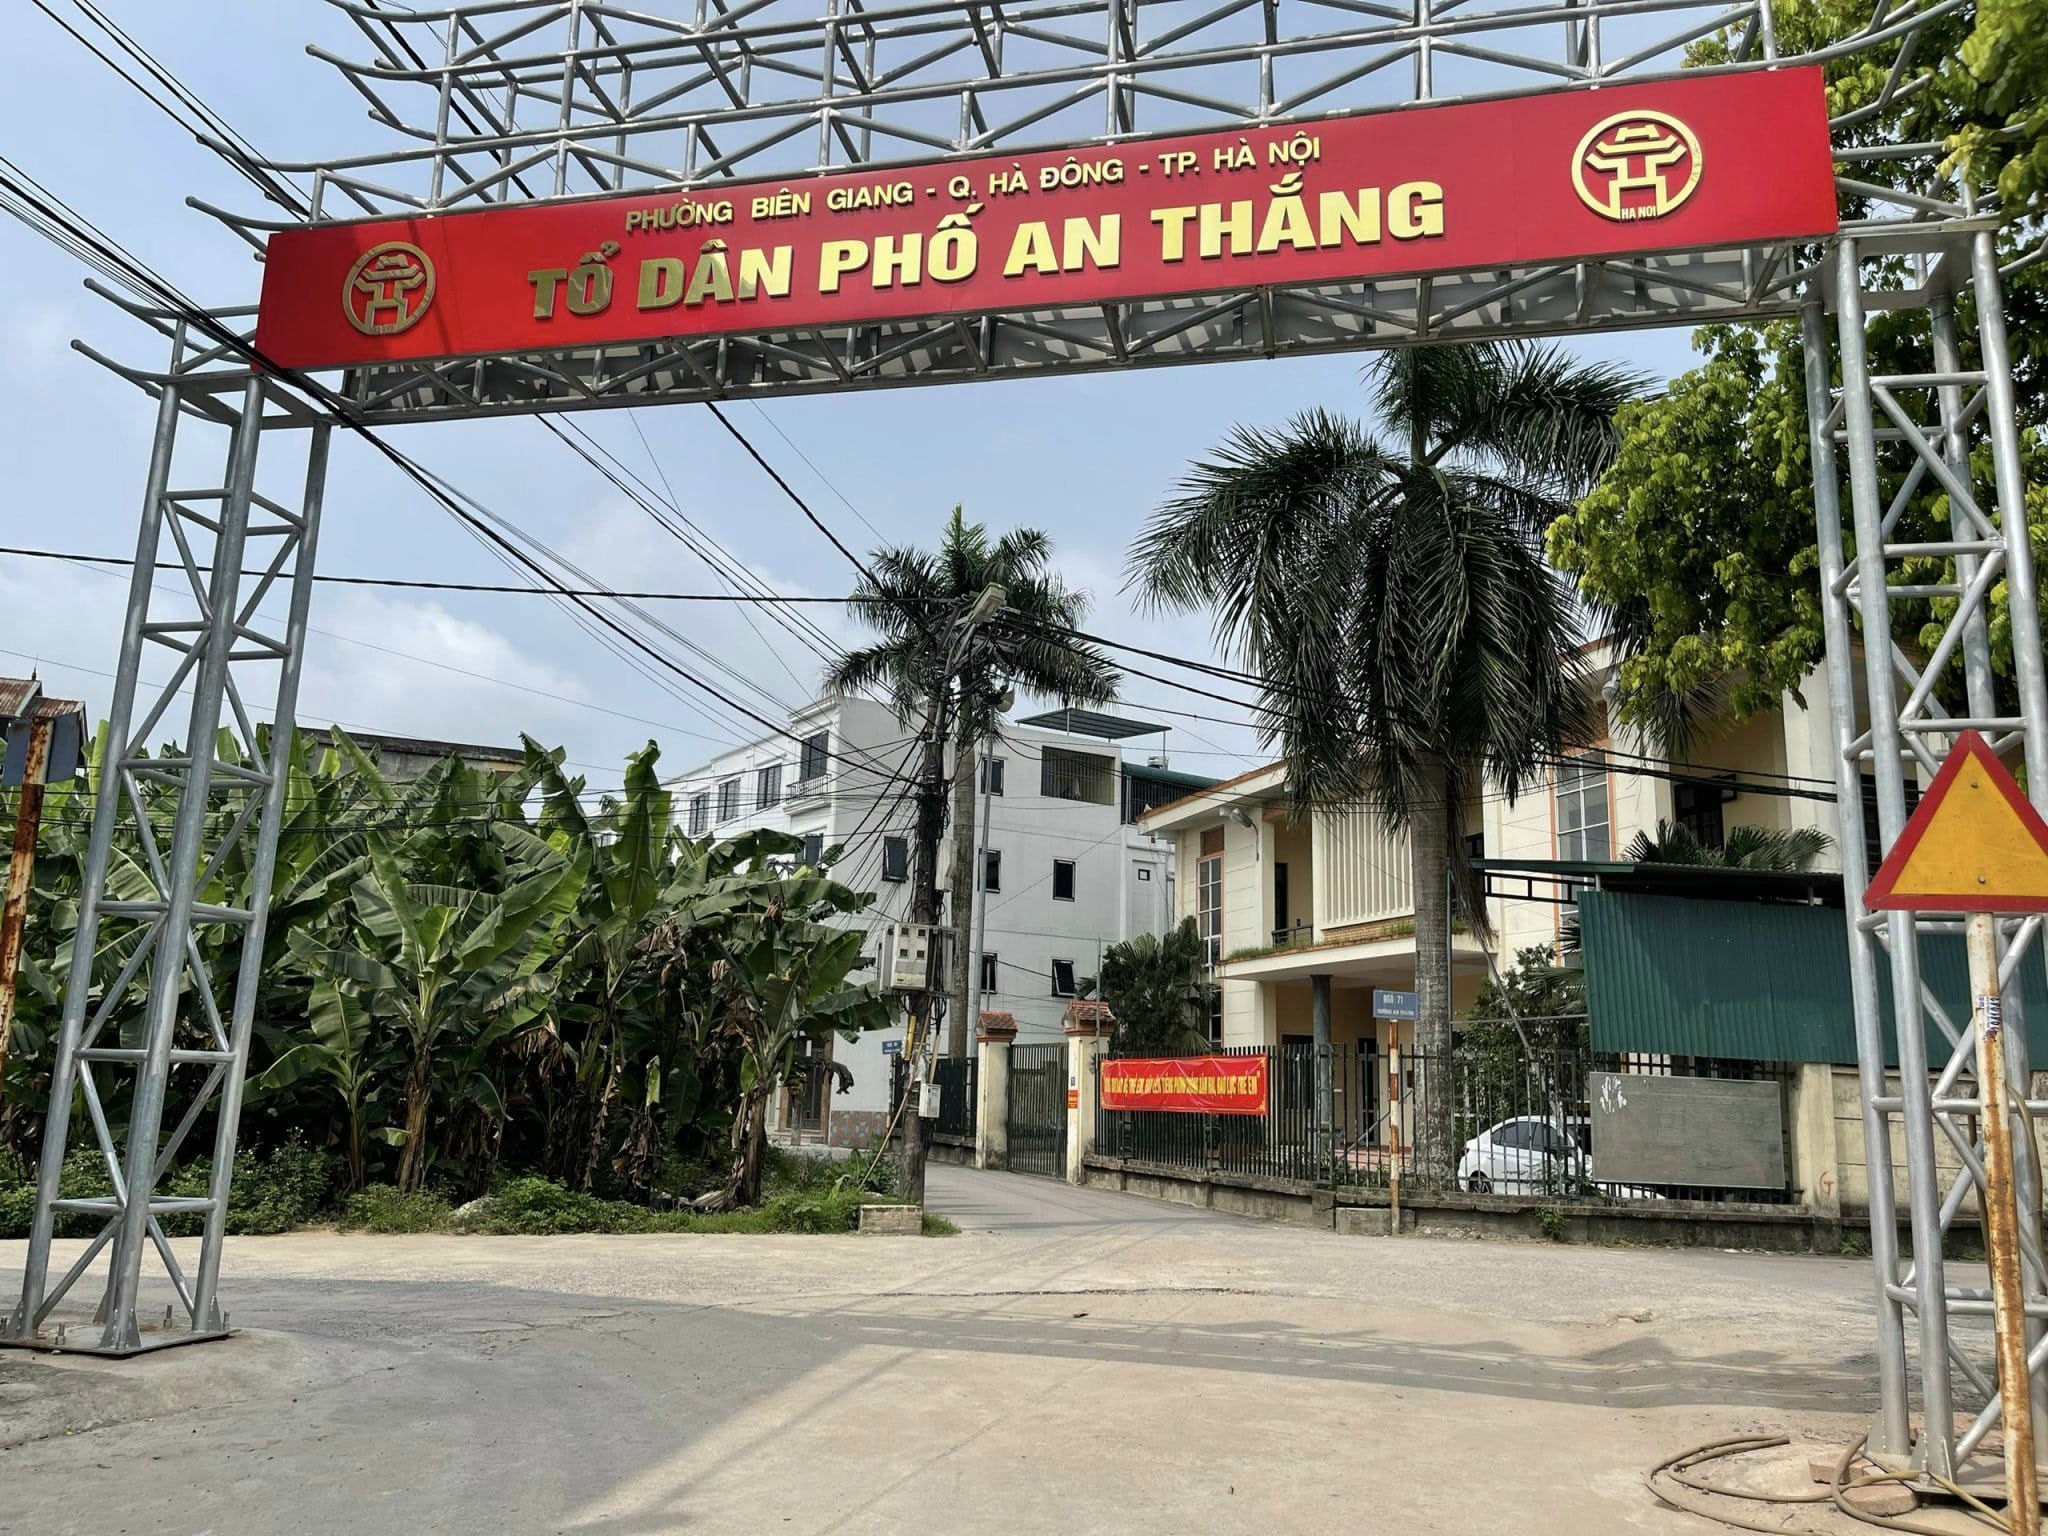 Cc gửi bán 55m2, 3,x tỷ, 2 mặt tiền, đất trục chính kinh doanh, ô tô tại An Thắng, Biên Giang, Hà Nội-03